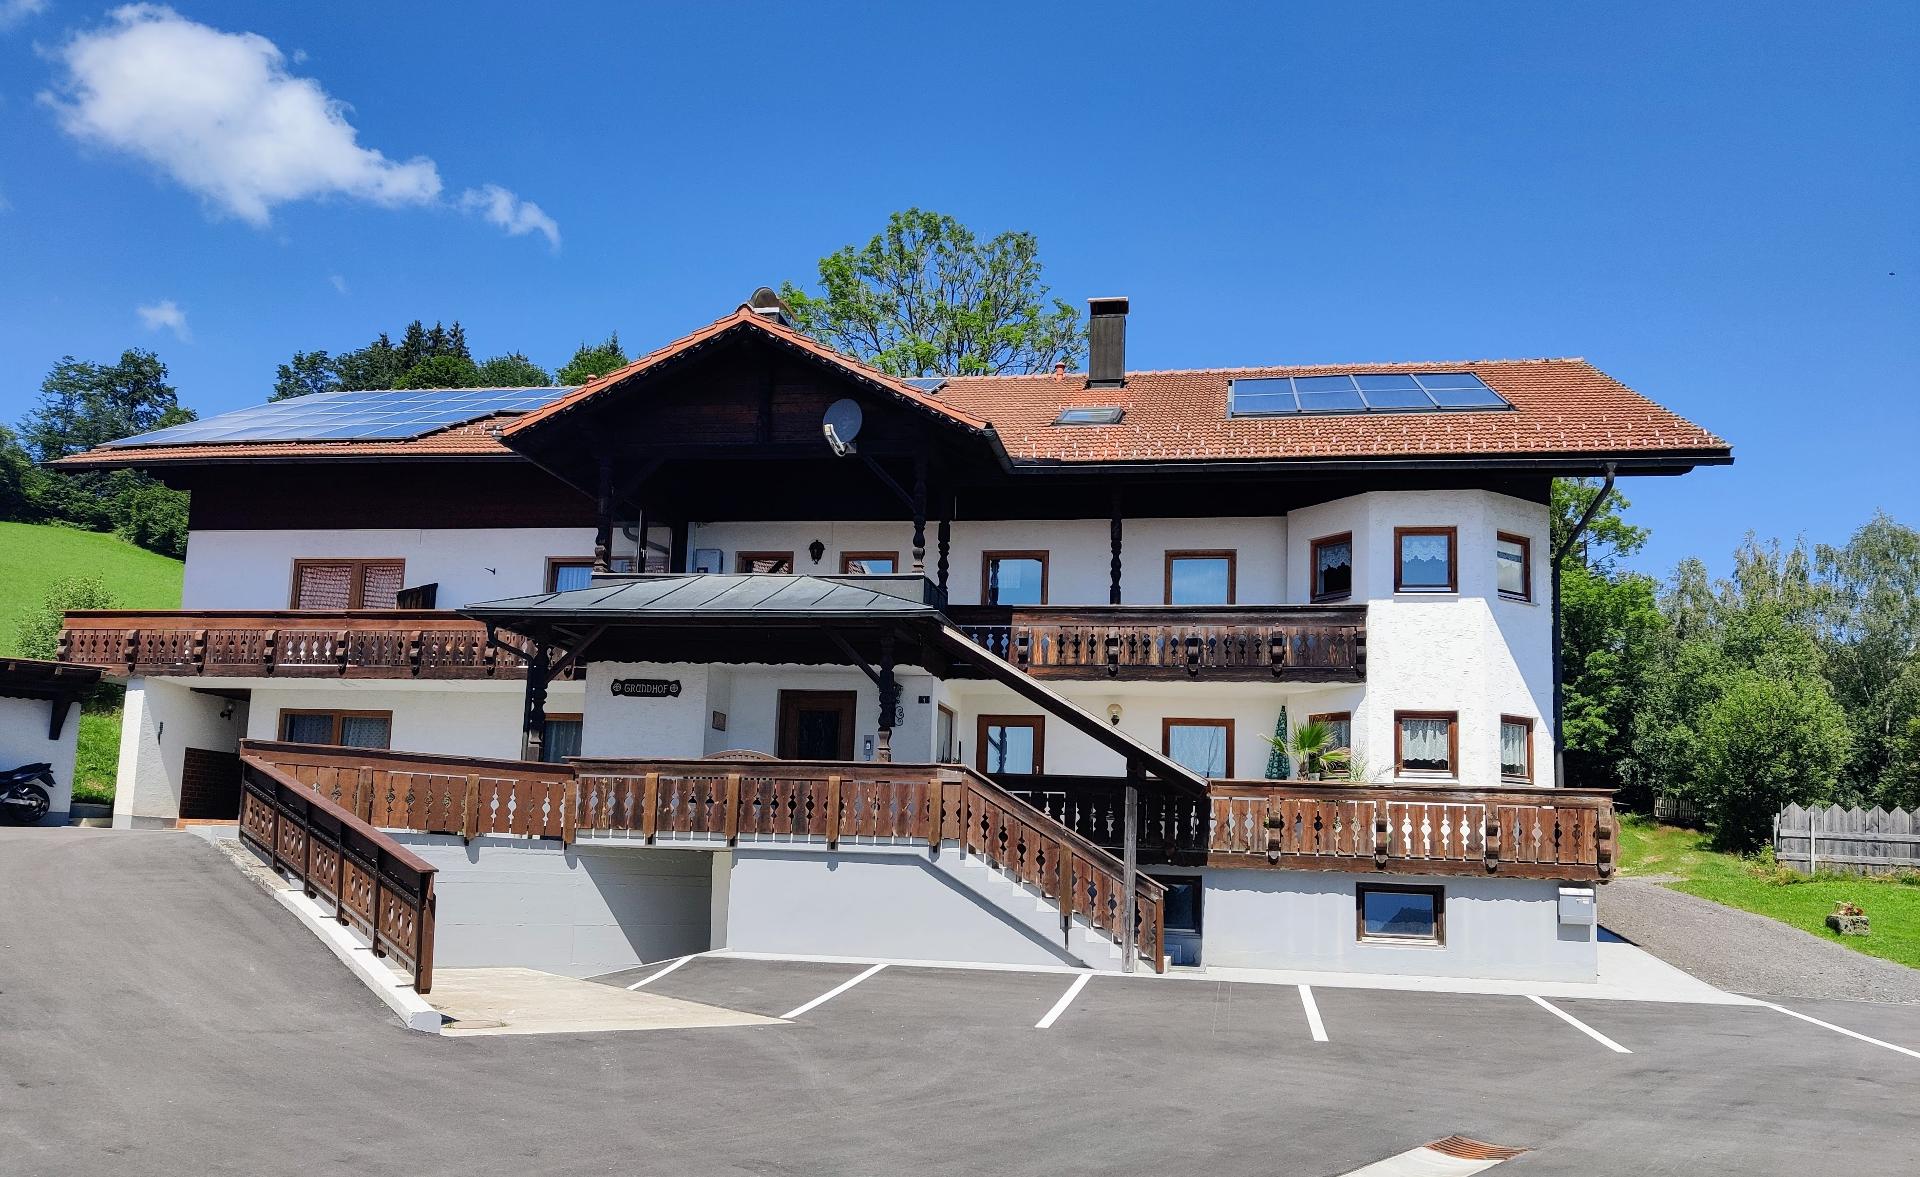 Grundhof in Drachselsried